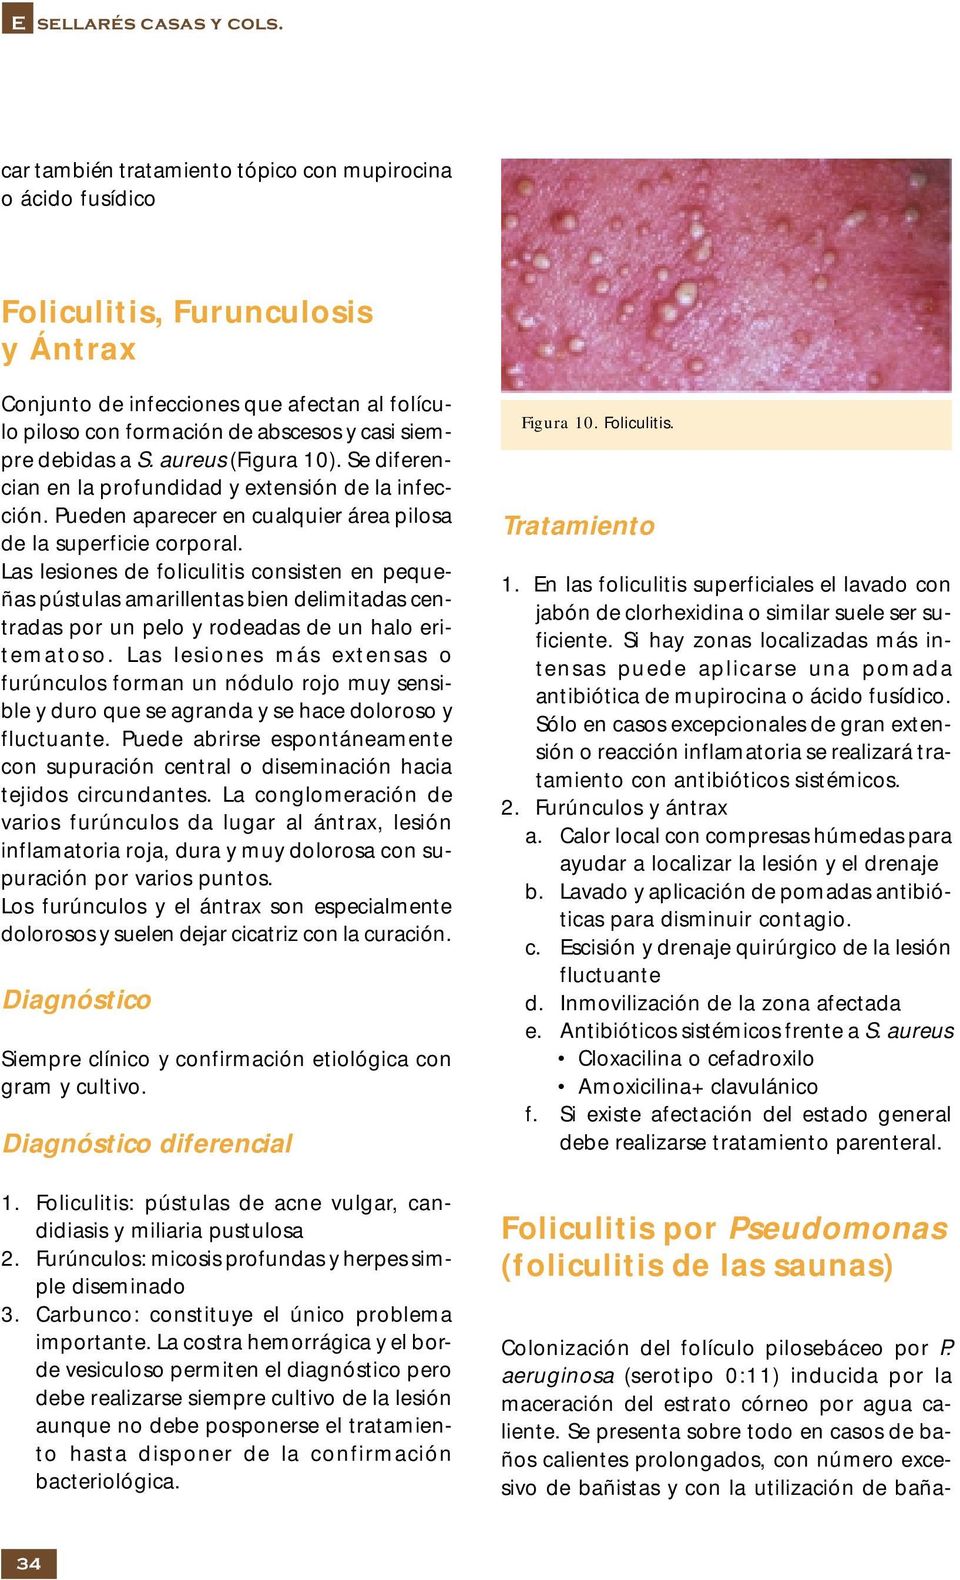 debidas a S. aureus (Figura 10). Se diferencian en la profundidad y extensión de la infección. Pueden aparecer en cualquier área pilosa de la superficie corporal.